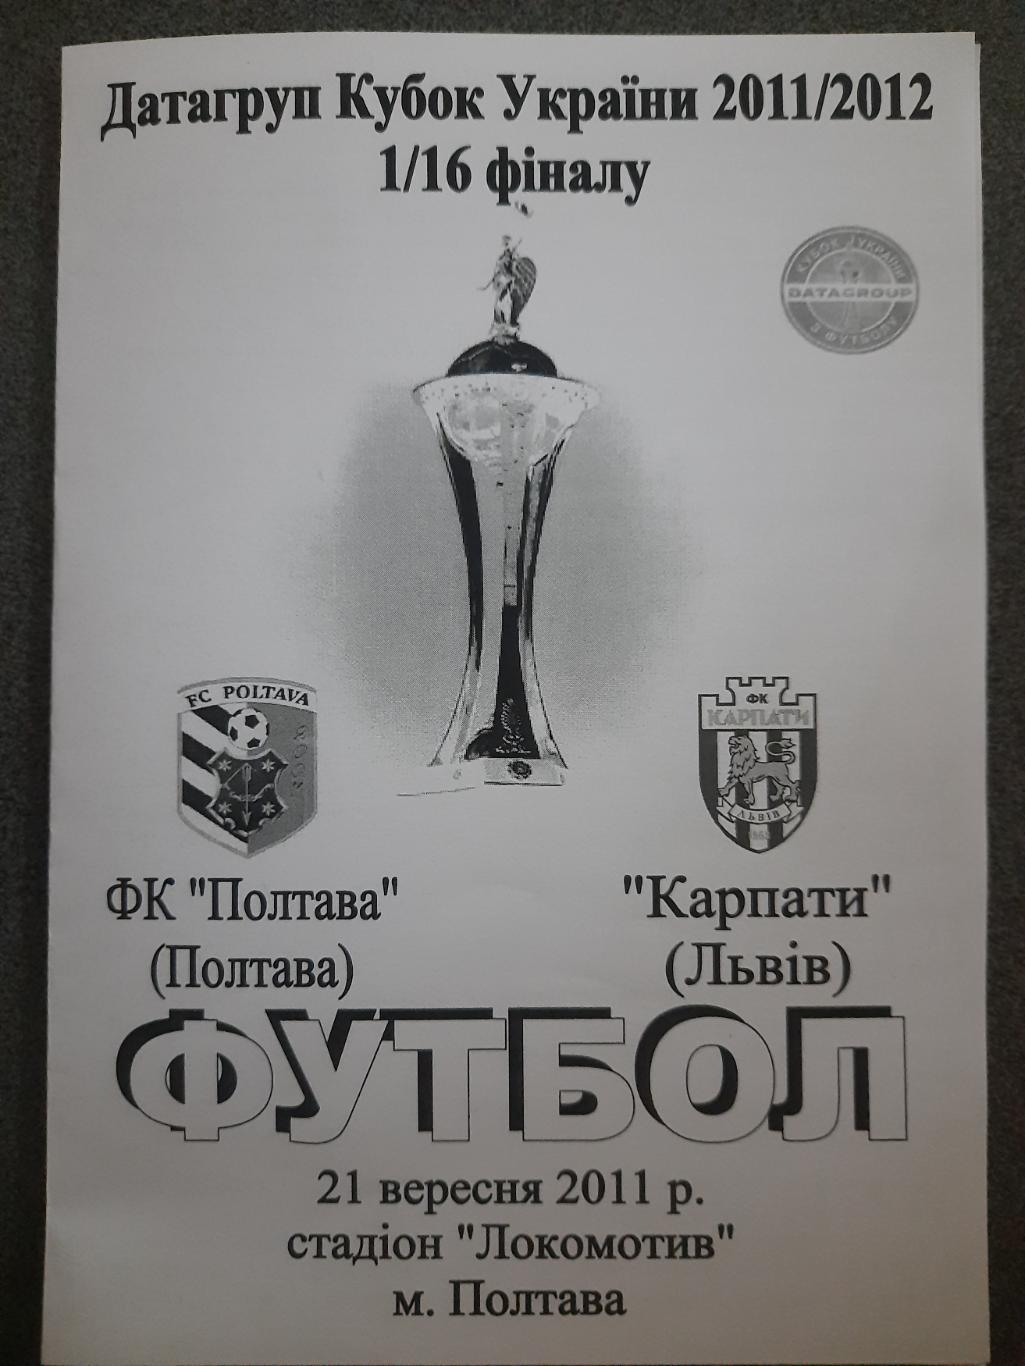 ФК Полтава-Карпаты Львов 21.09.2011,кубок.